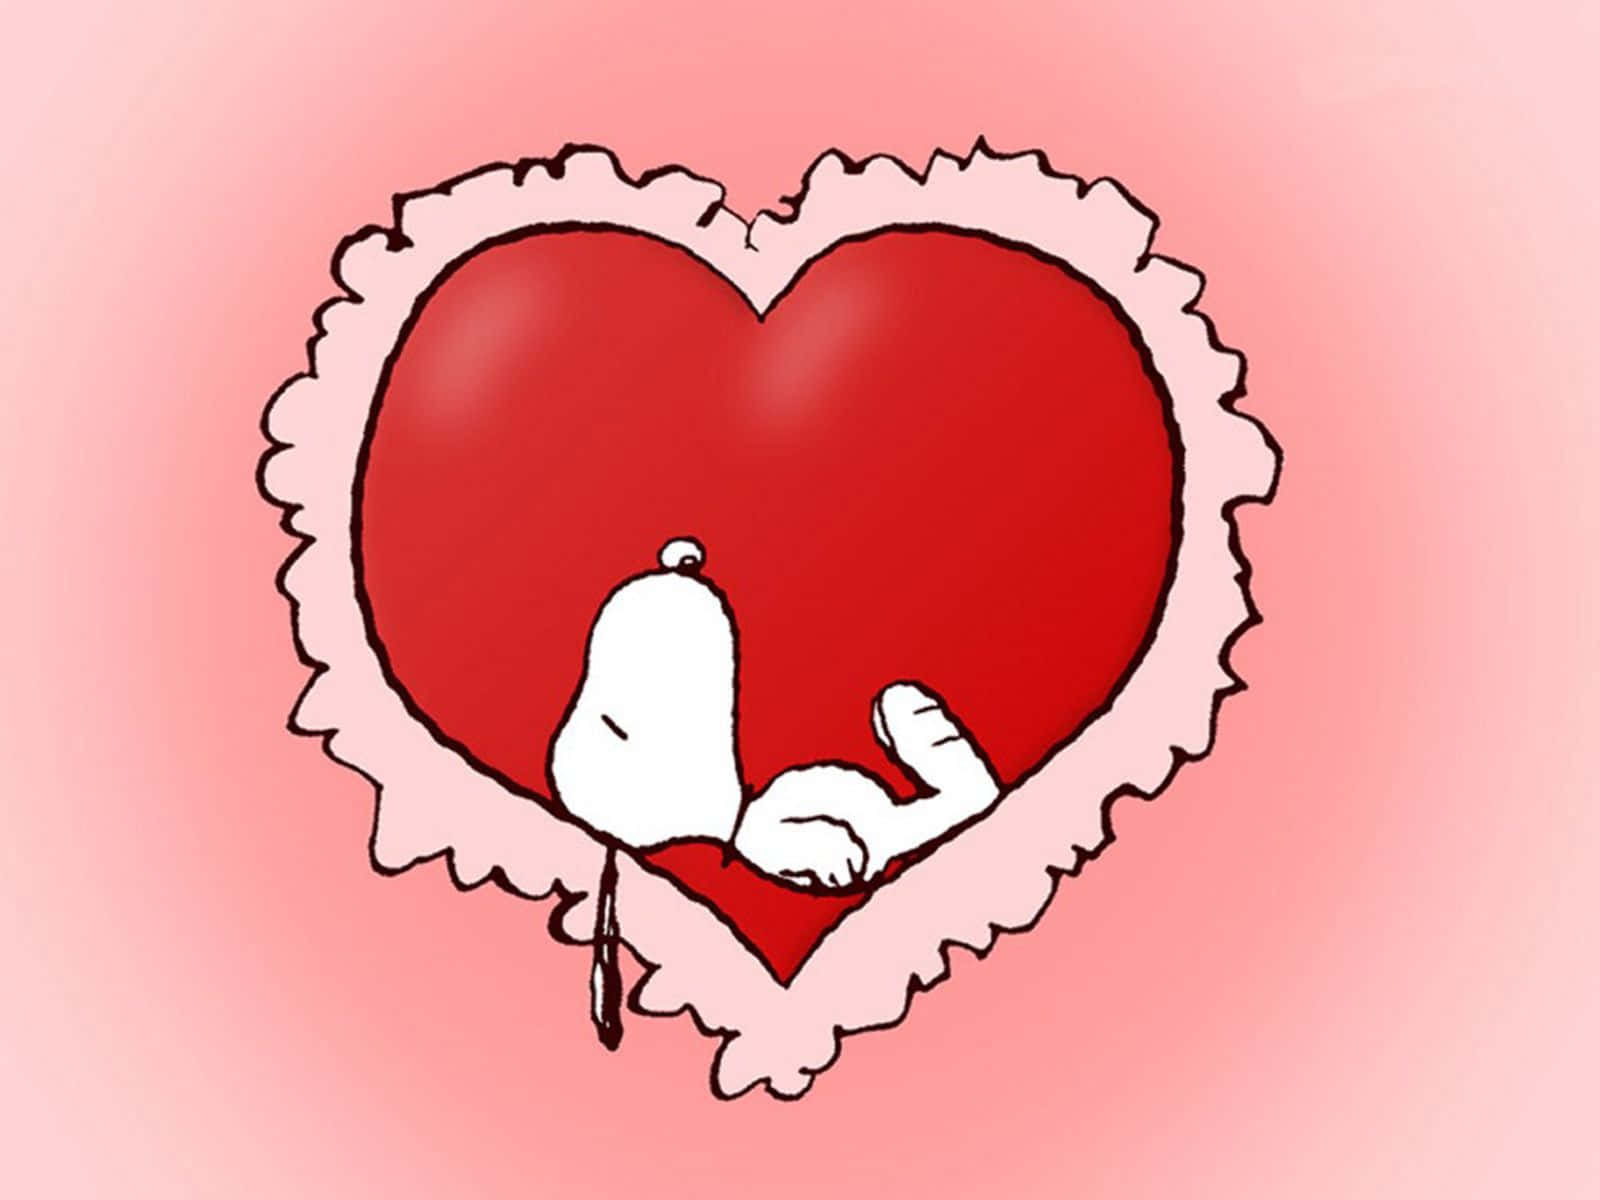 A Cartoon Heart With A Cartoon Snoopy Inside